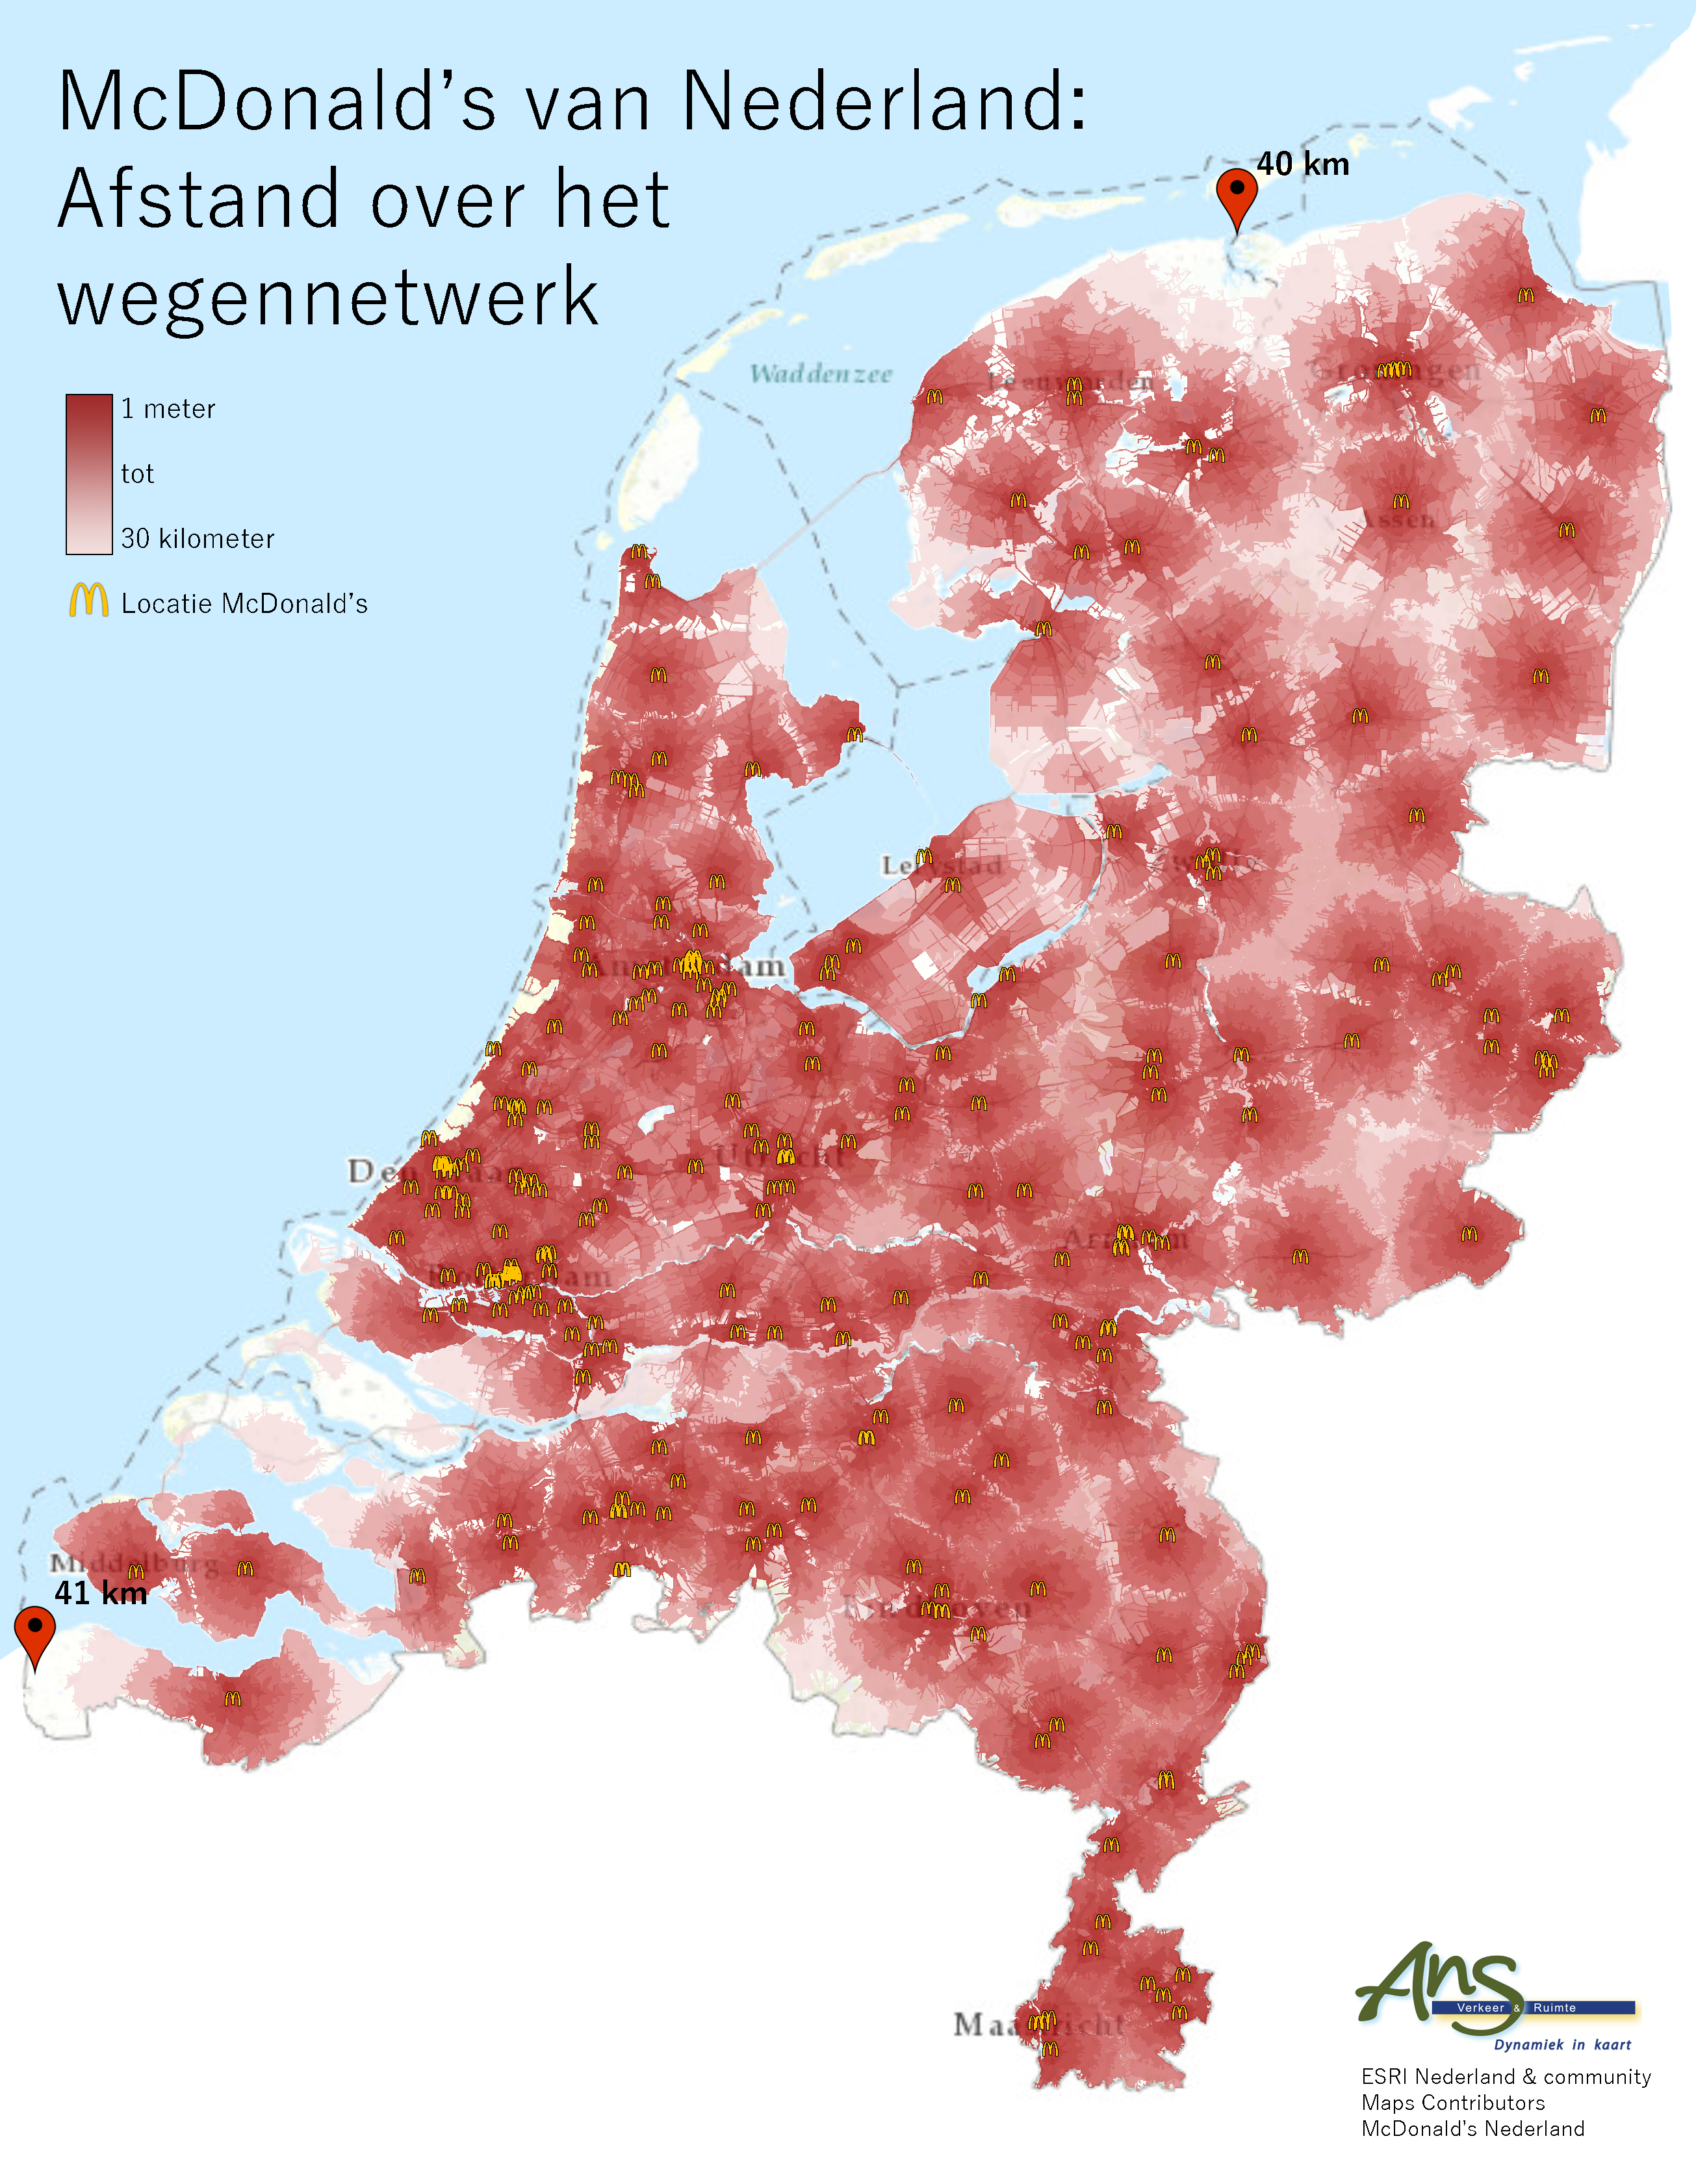 wat is het bereik van McDonald's in Nederland?